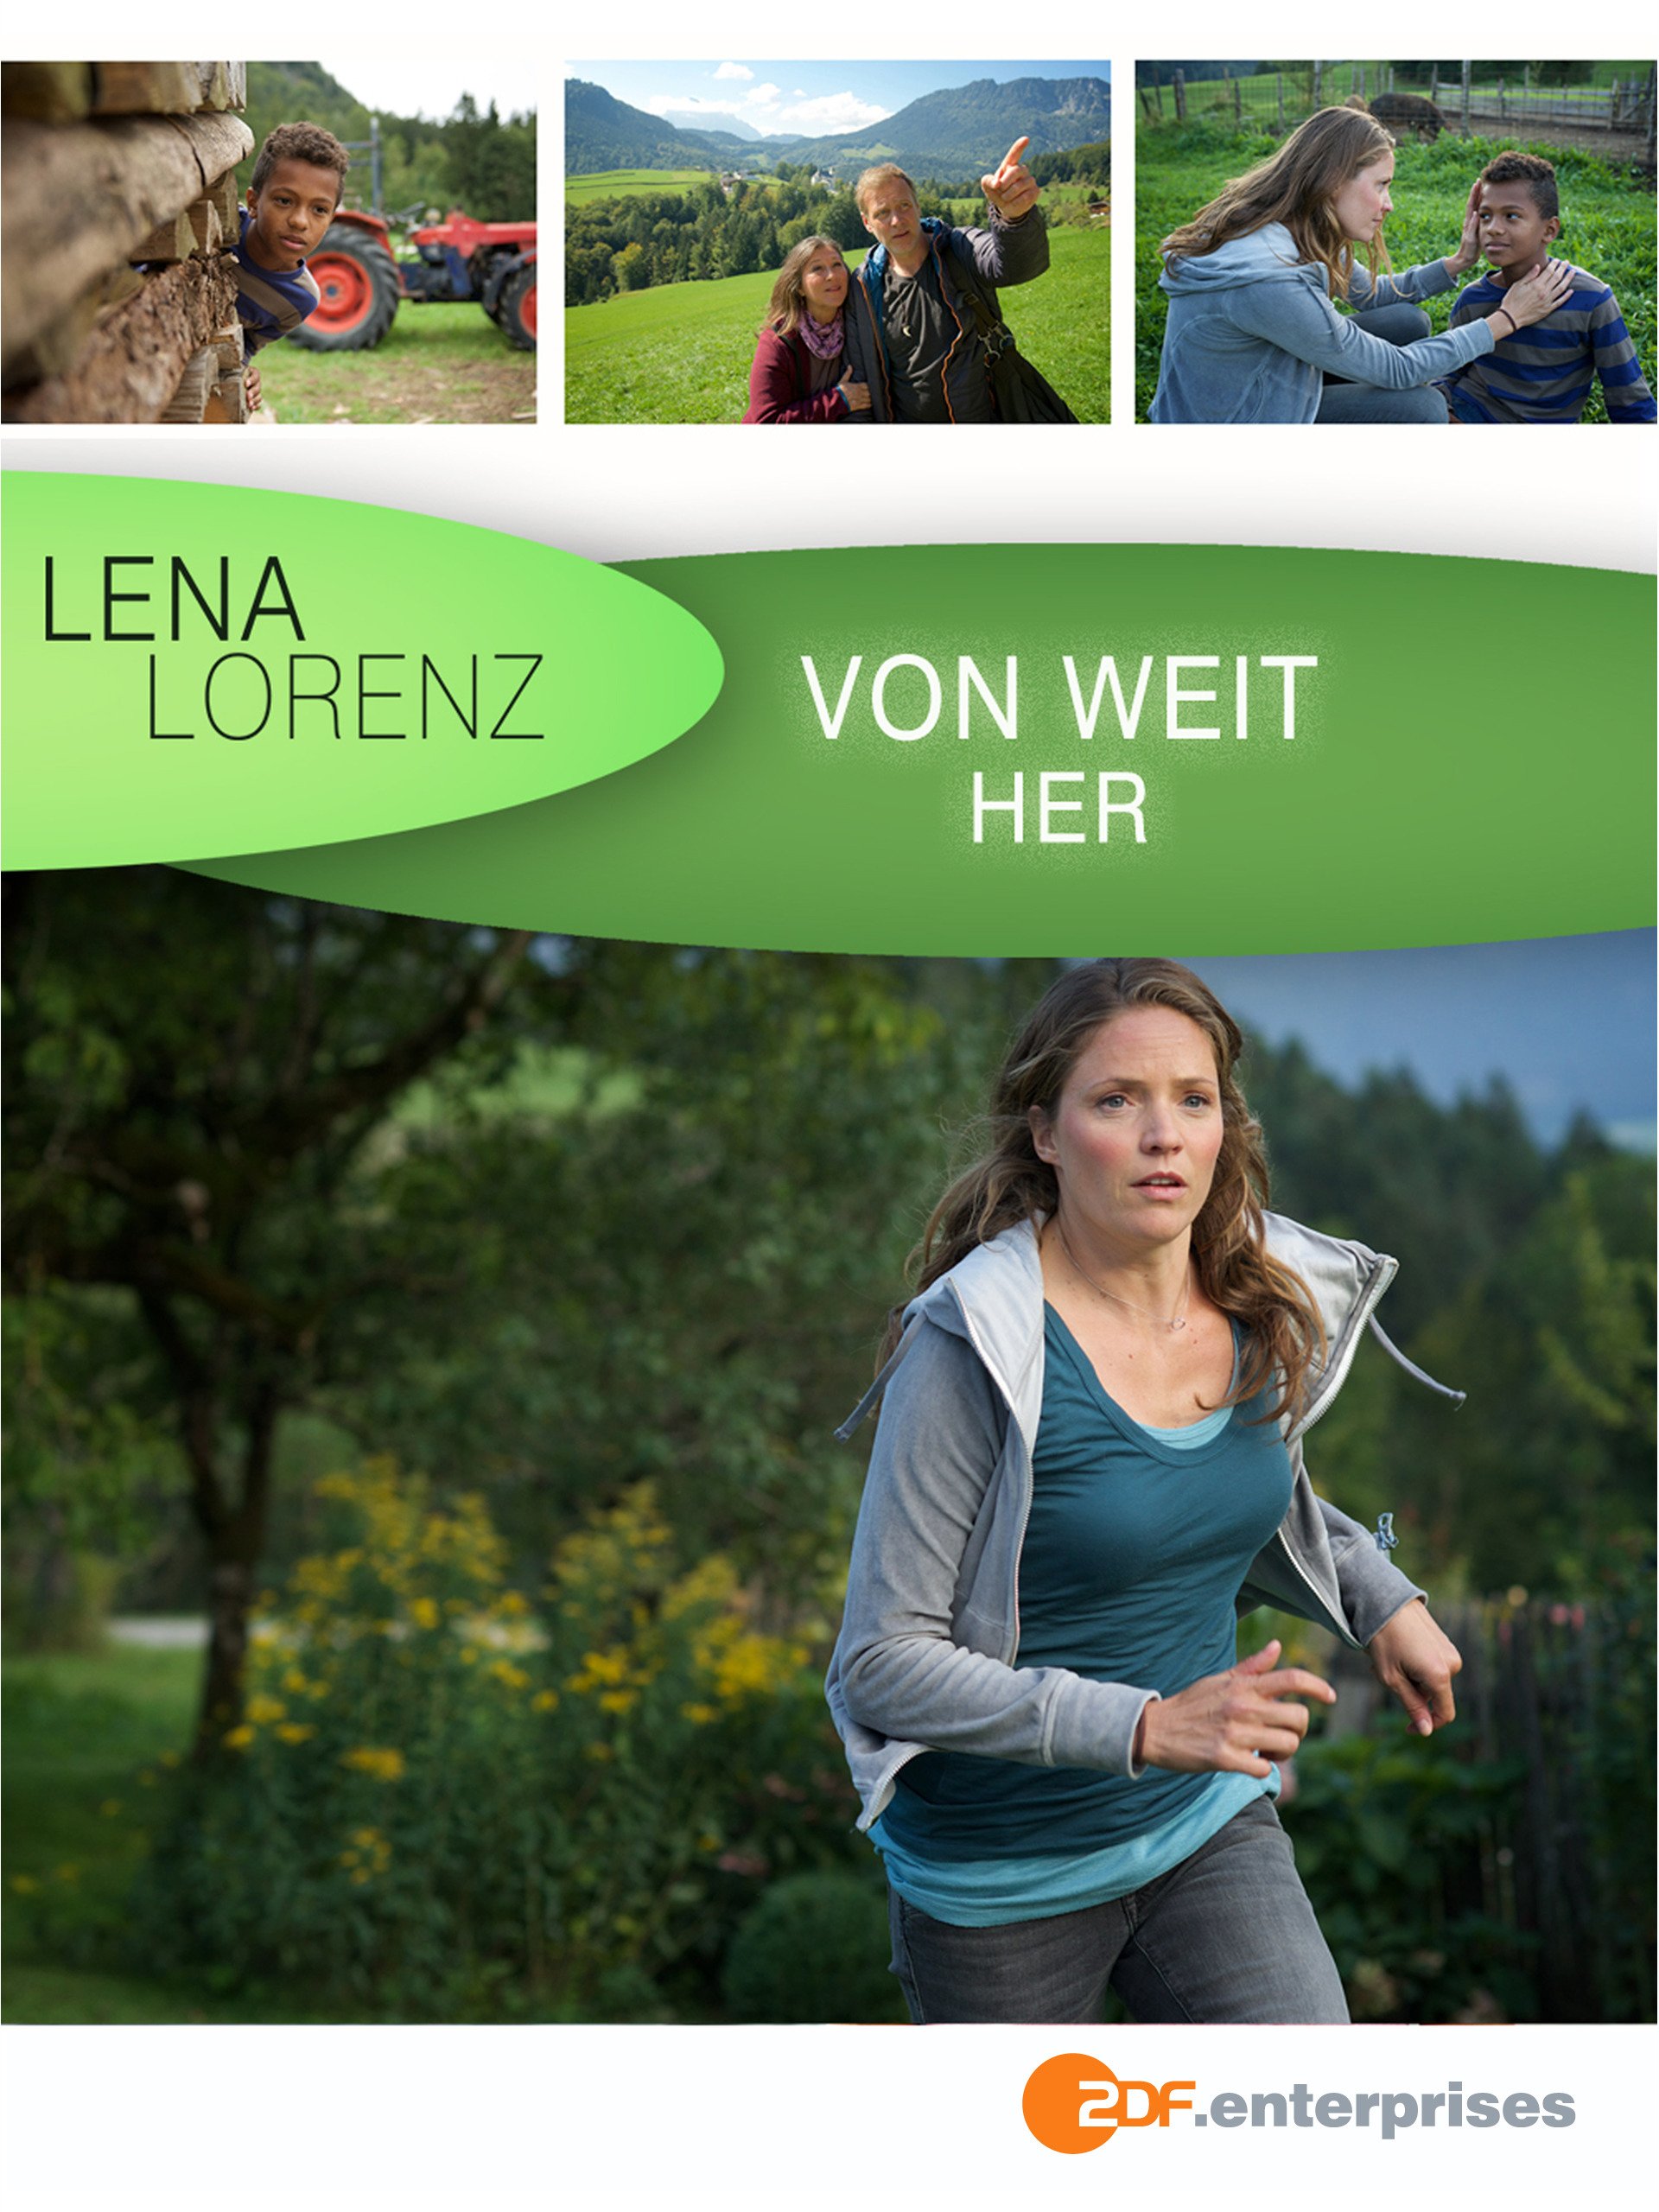 Lena Lorenz: Un largo camino